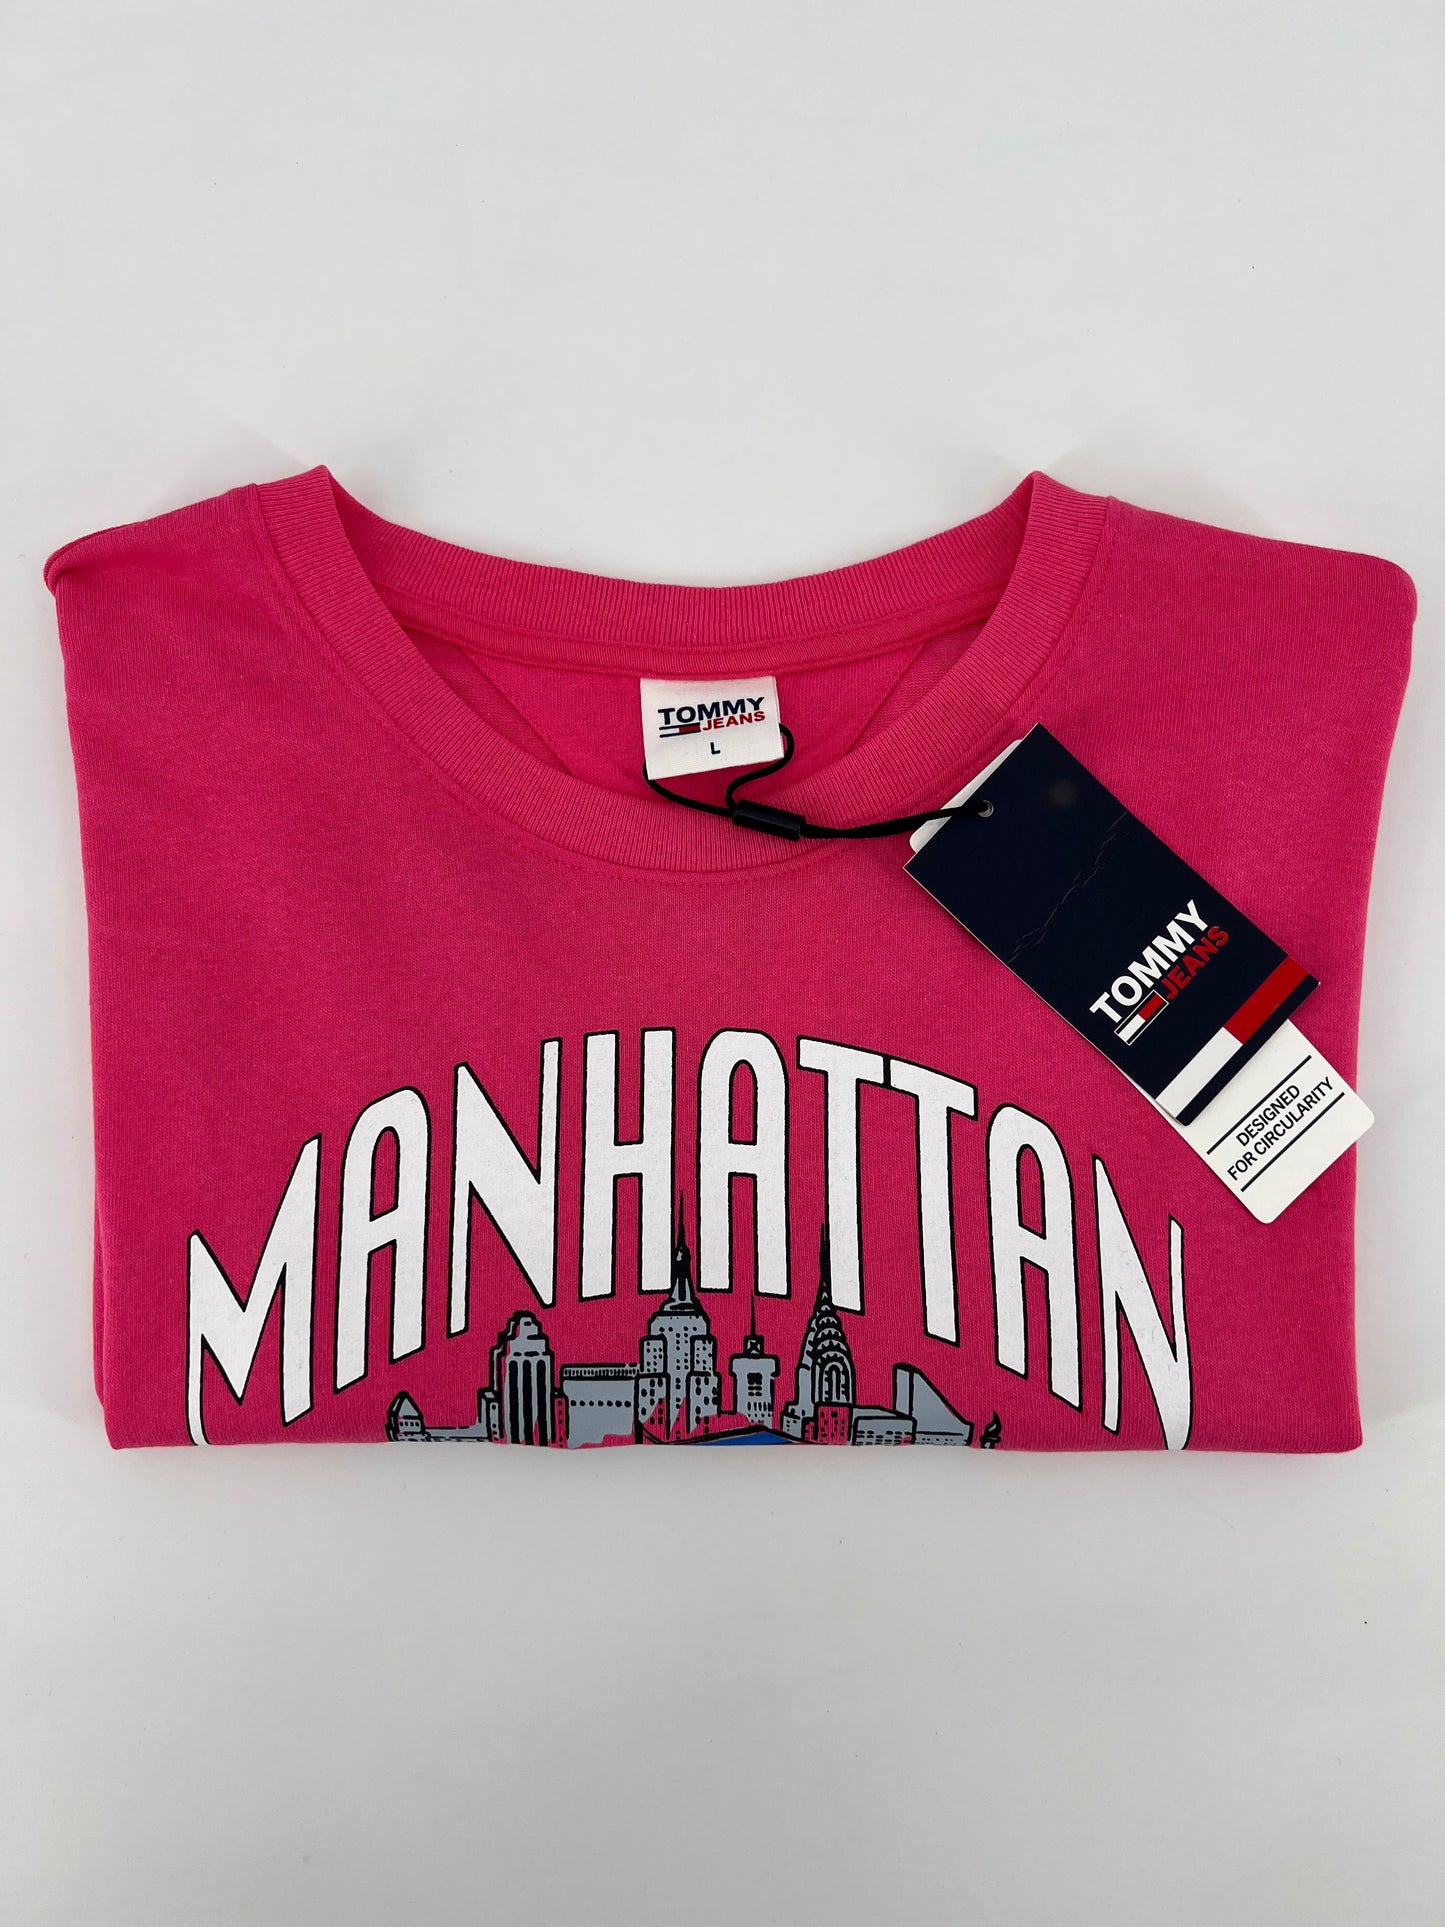 TOMMY HILFIGER JEANS - Tee shirt manche courte " Manhattan "